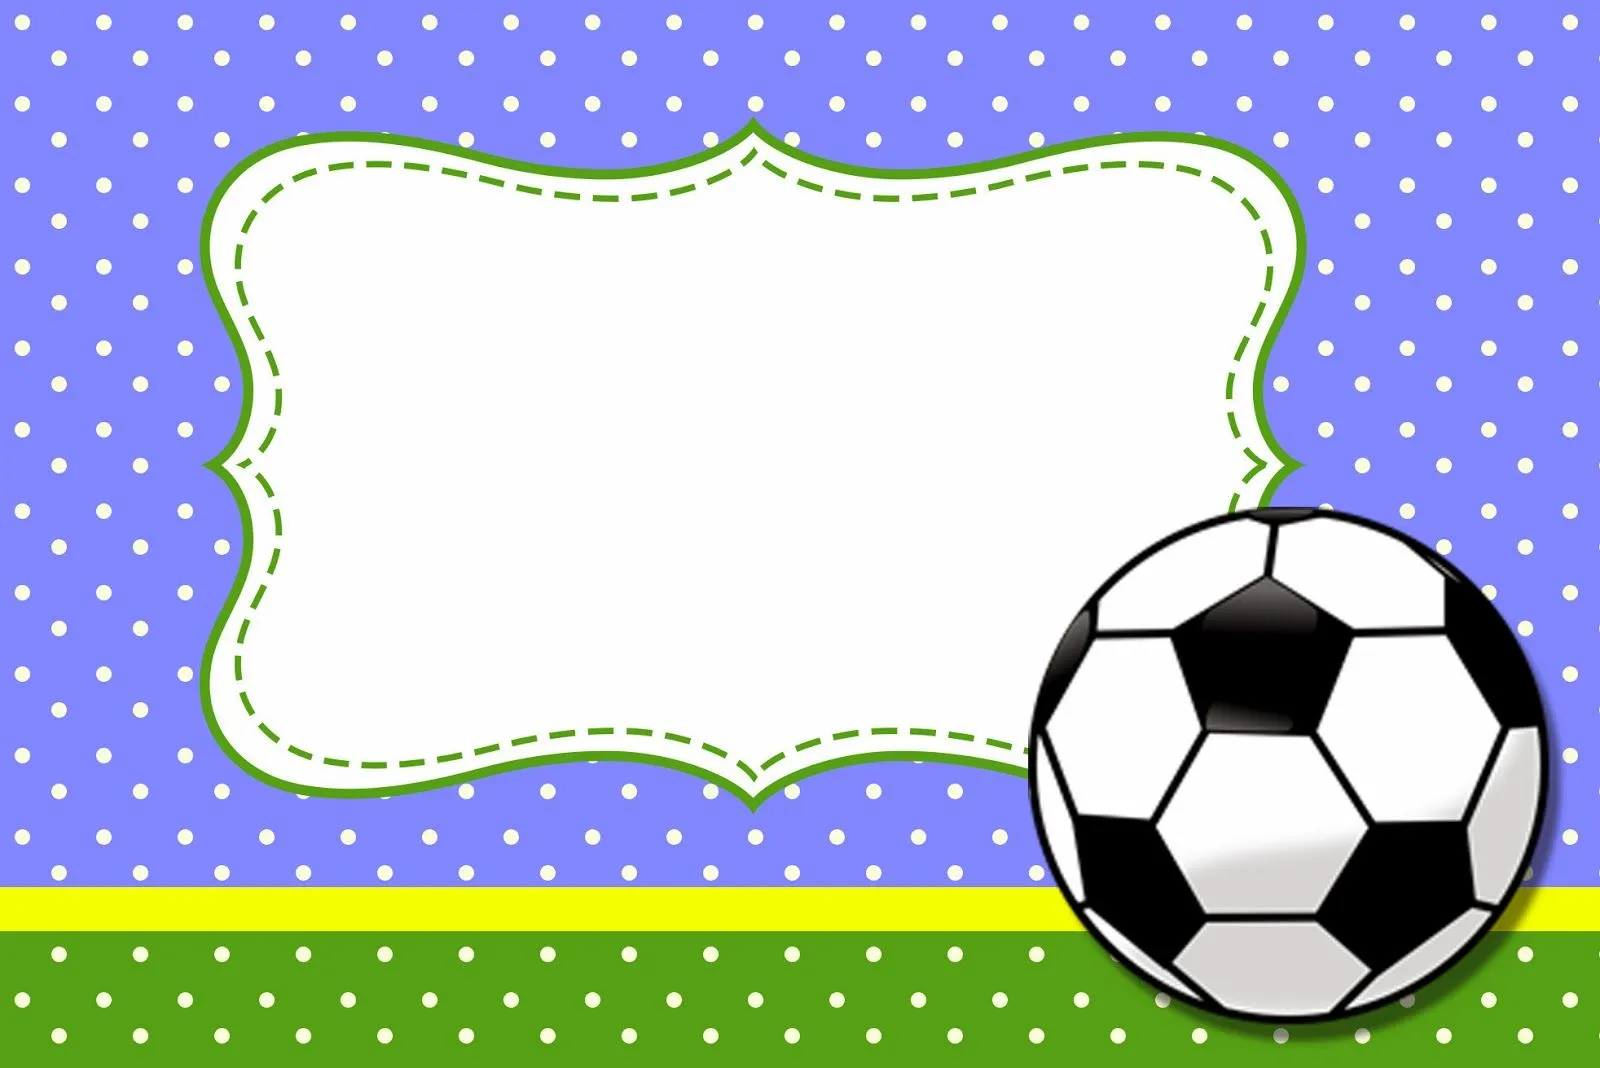 Fútbol: Tarjetas o Invitaciones para Imprimir Gratis. | Ideas y ...